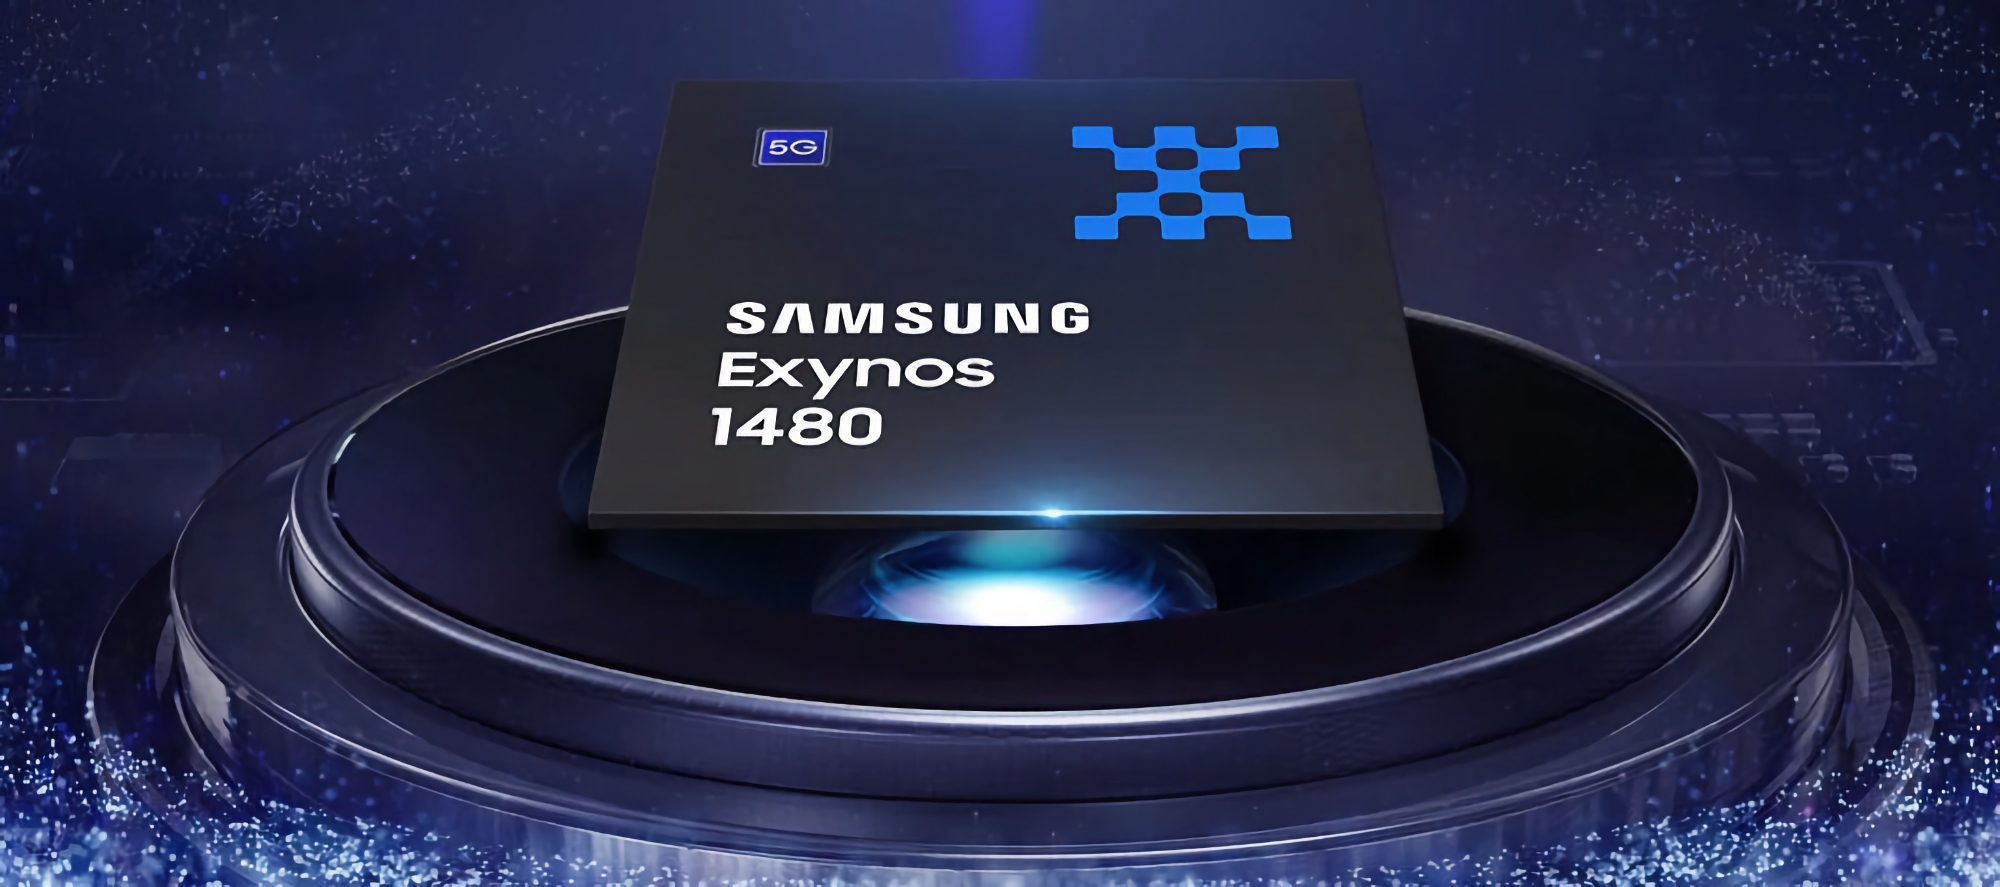 Samsung hat die Spezifikationen des Exynos 1480 Chips bekannt gegeben: acht Kerne, 4 Nanometer und Xclipse 530 Grafik mit AMD RDNA 2 Architektur